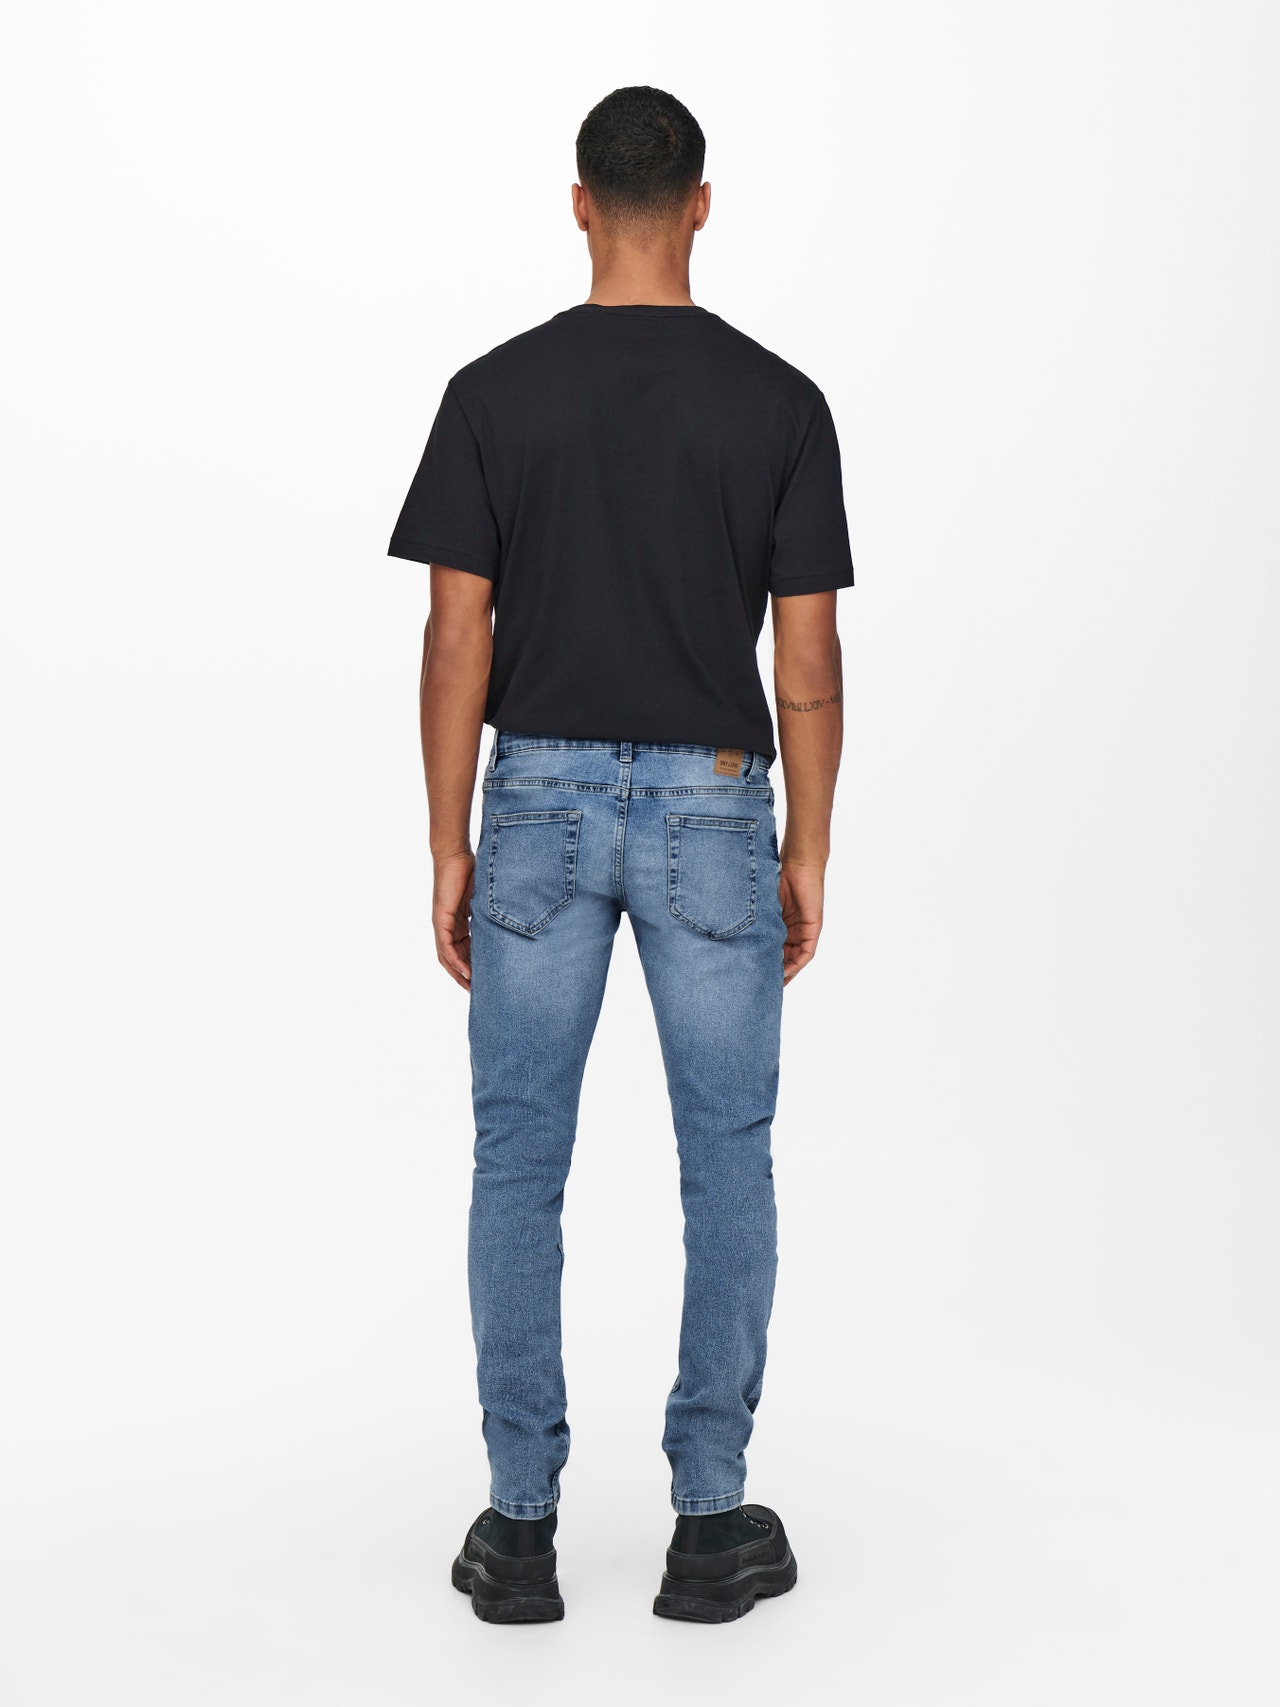 ONLY & SONS Slim Fit Regular rise Jeans -Blue Denim - 22019940